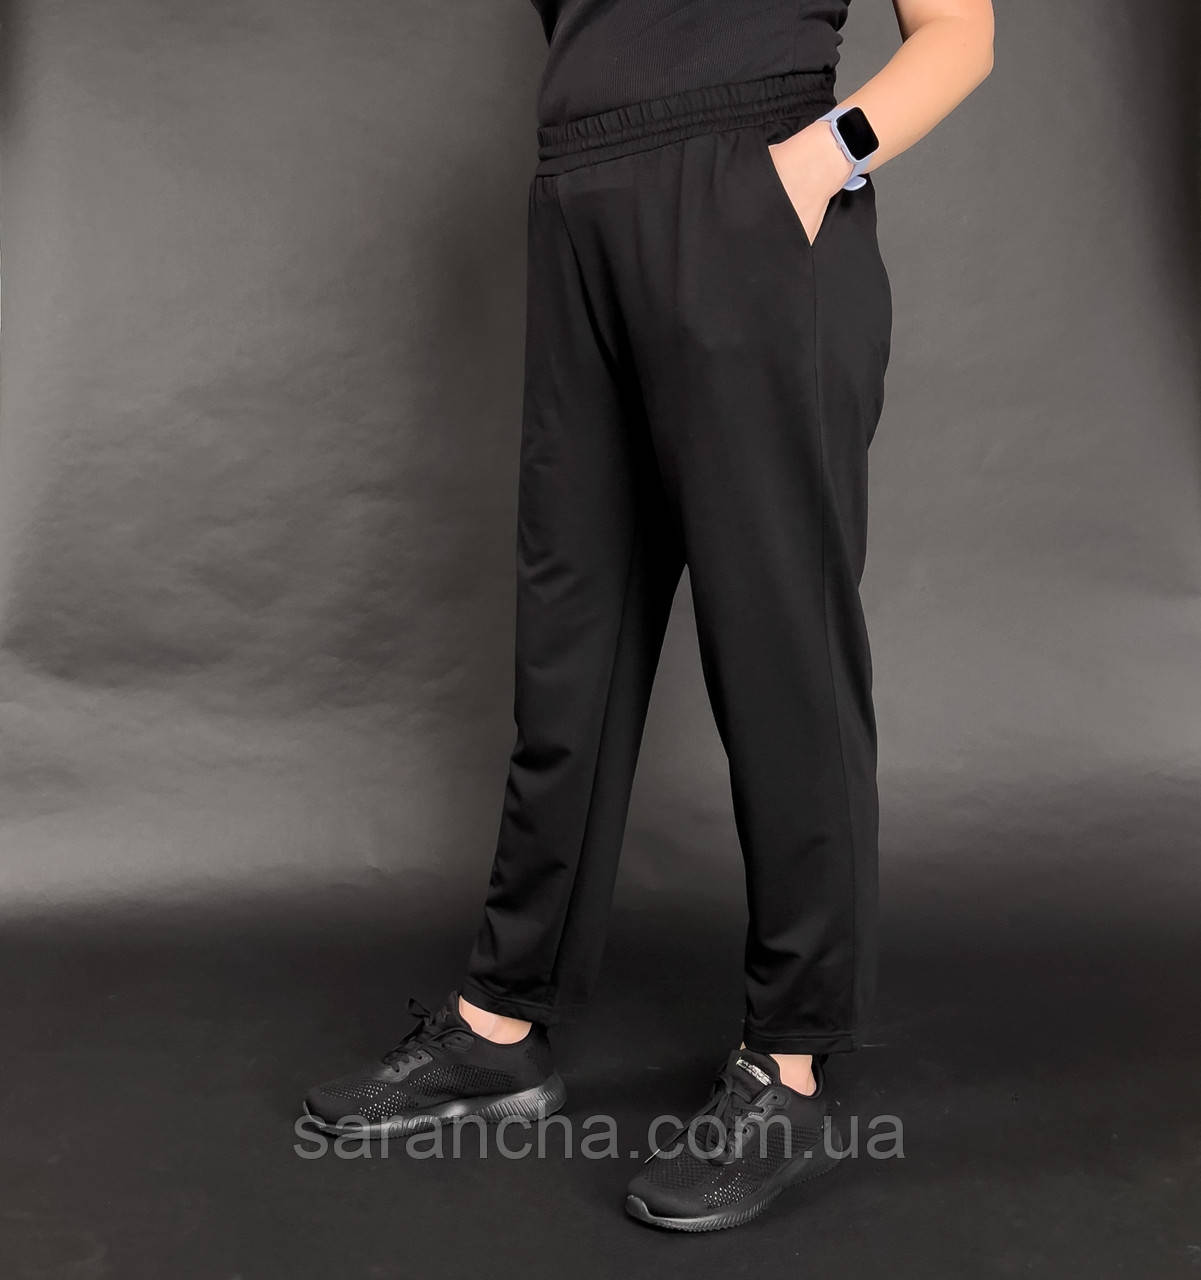 Штани прямі жіночі чорні розміри 50,52,54,56